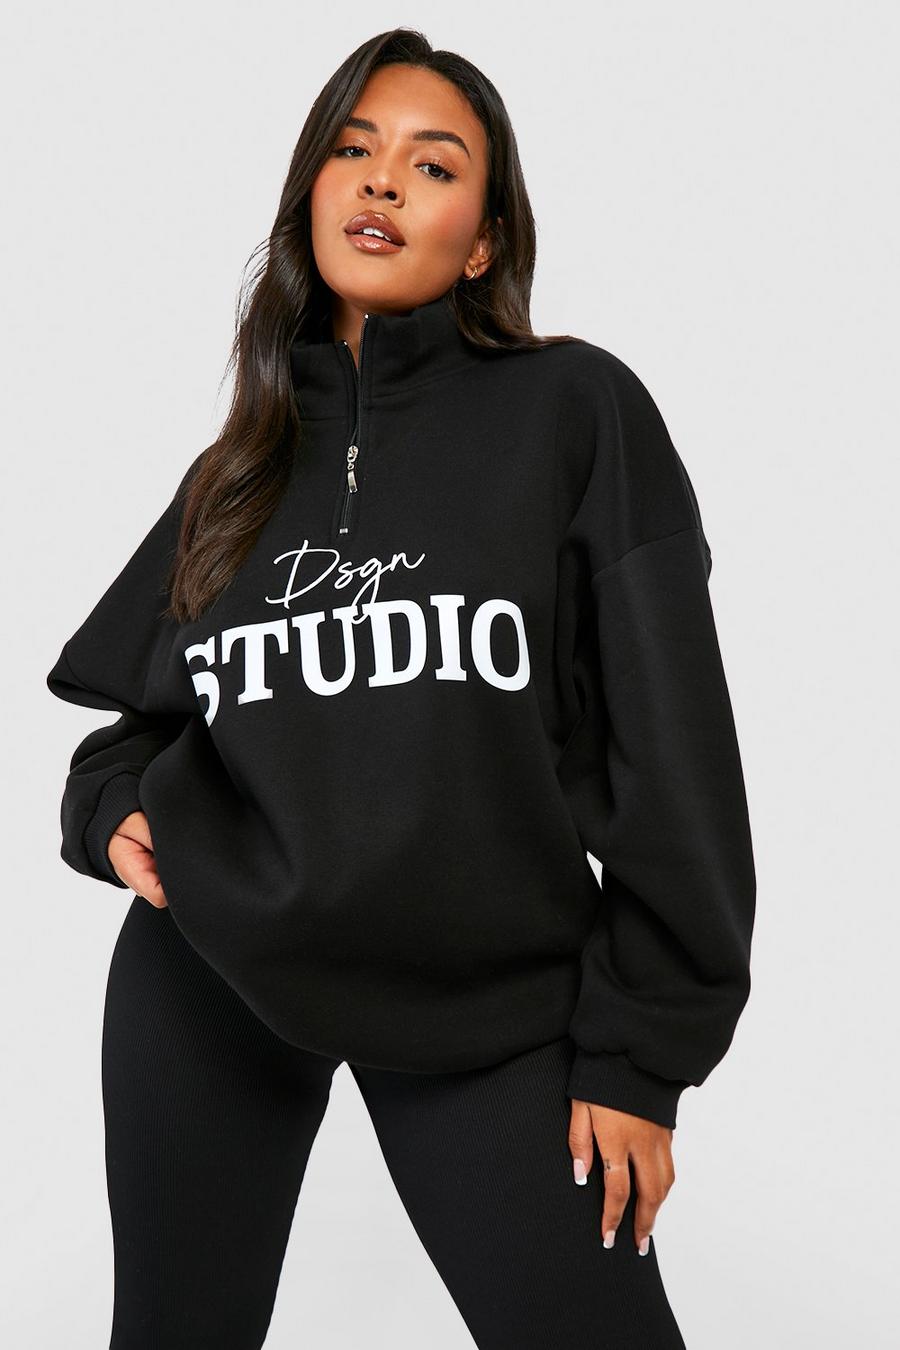 Plus Sweatshirt mit Dsgn Studio-Schriftzug und halbem Reißverschluss, Black